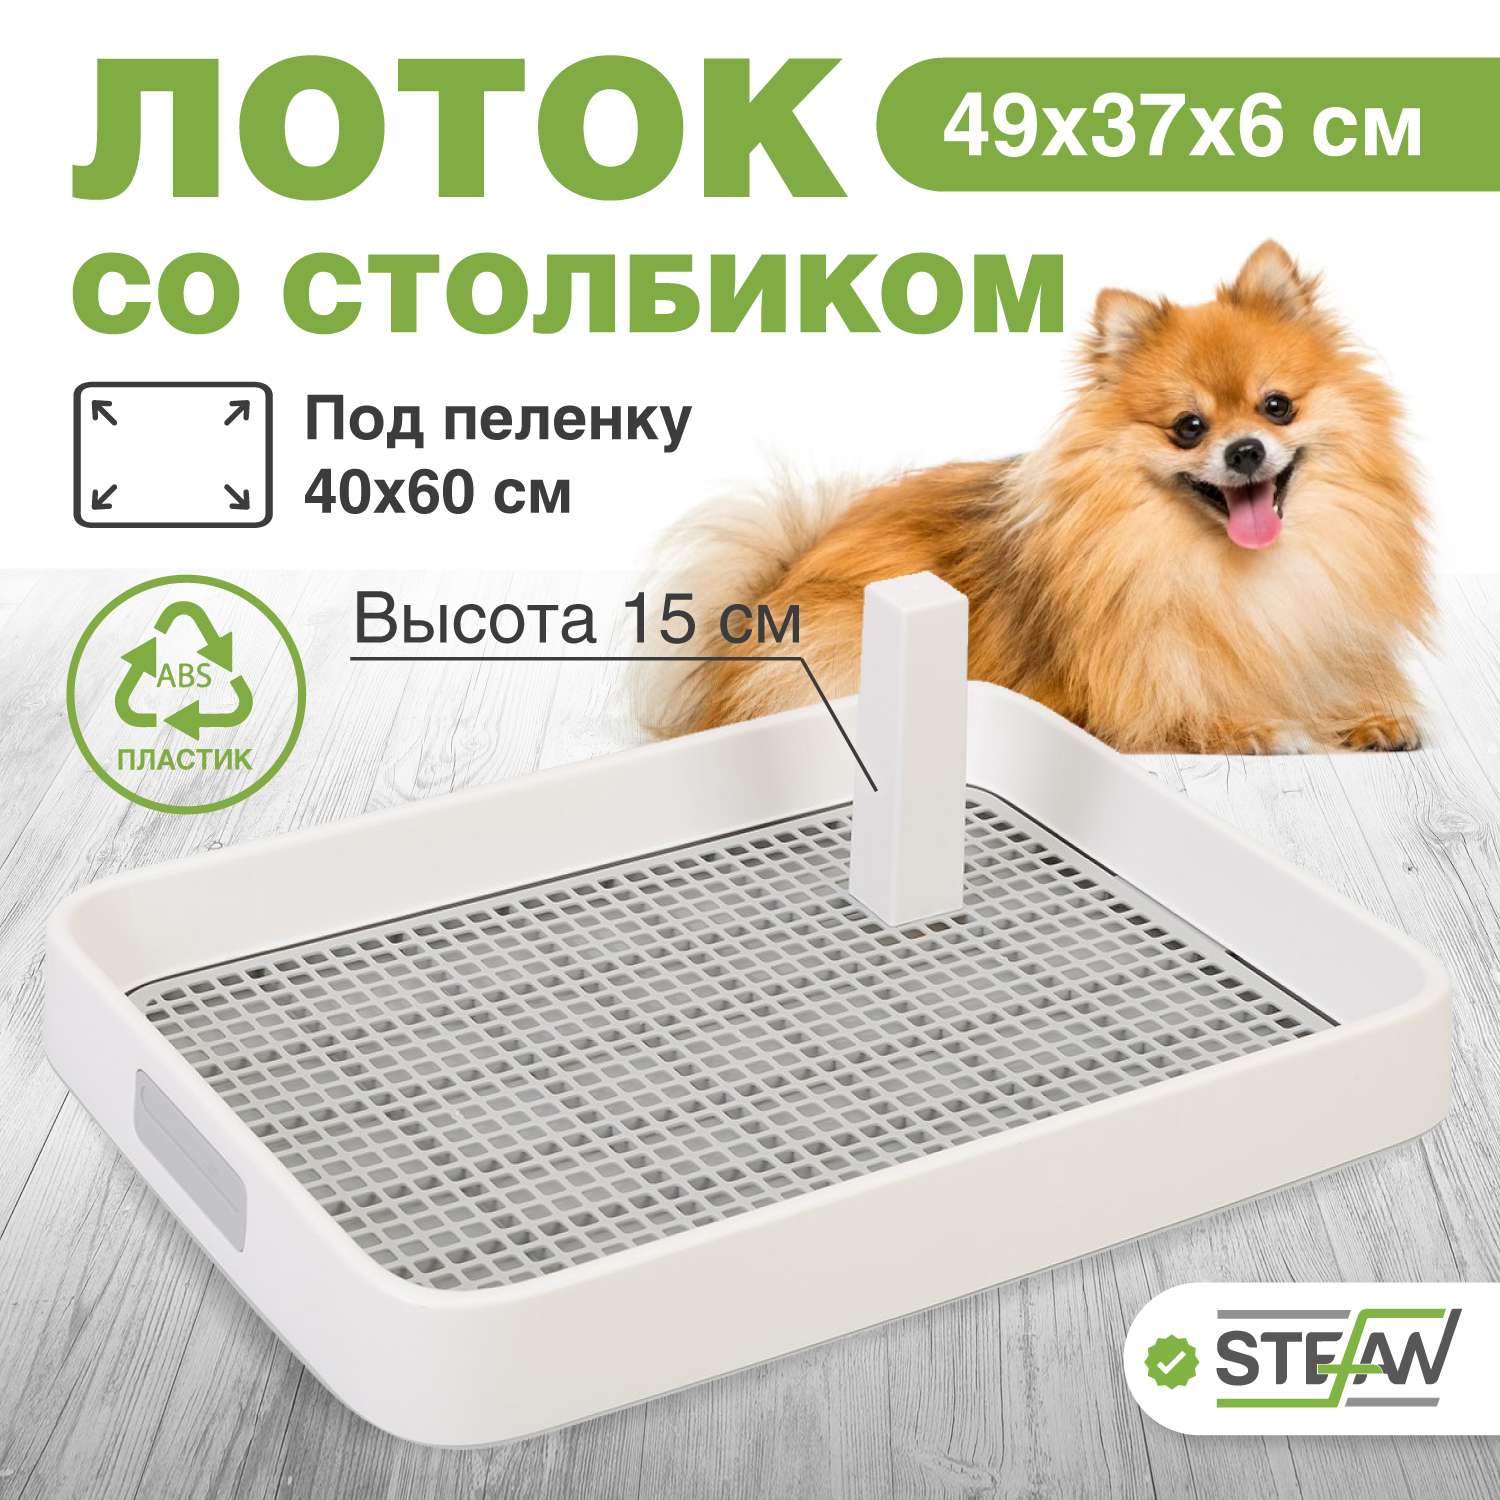 Туалет лоток для собак Stefan со столбиком S 49x37x6 серый - фото 1